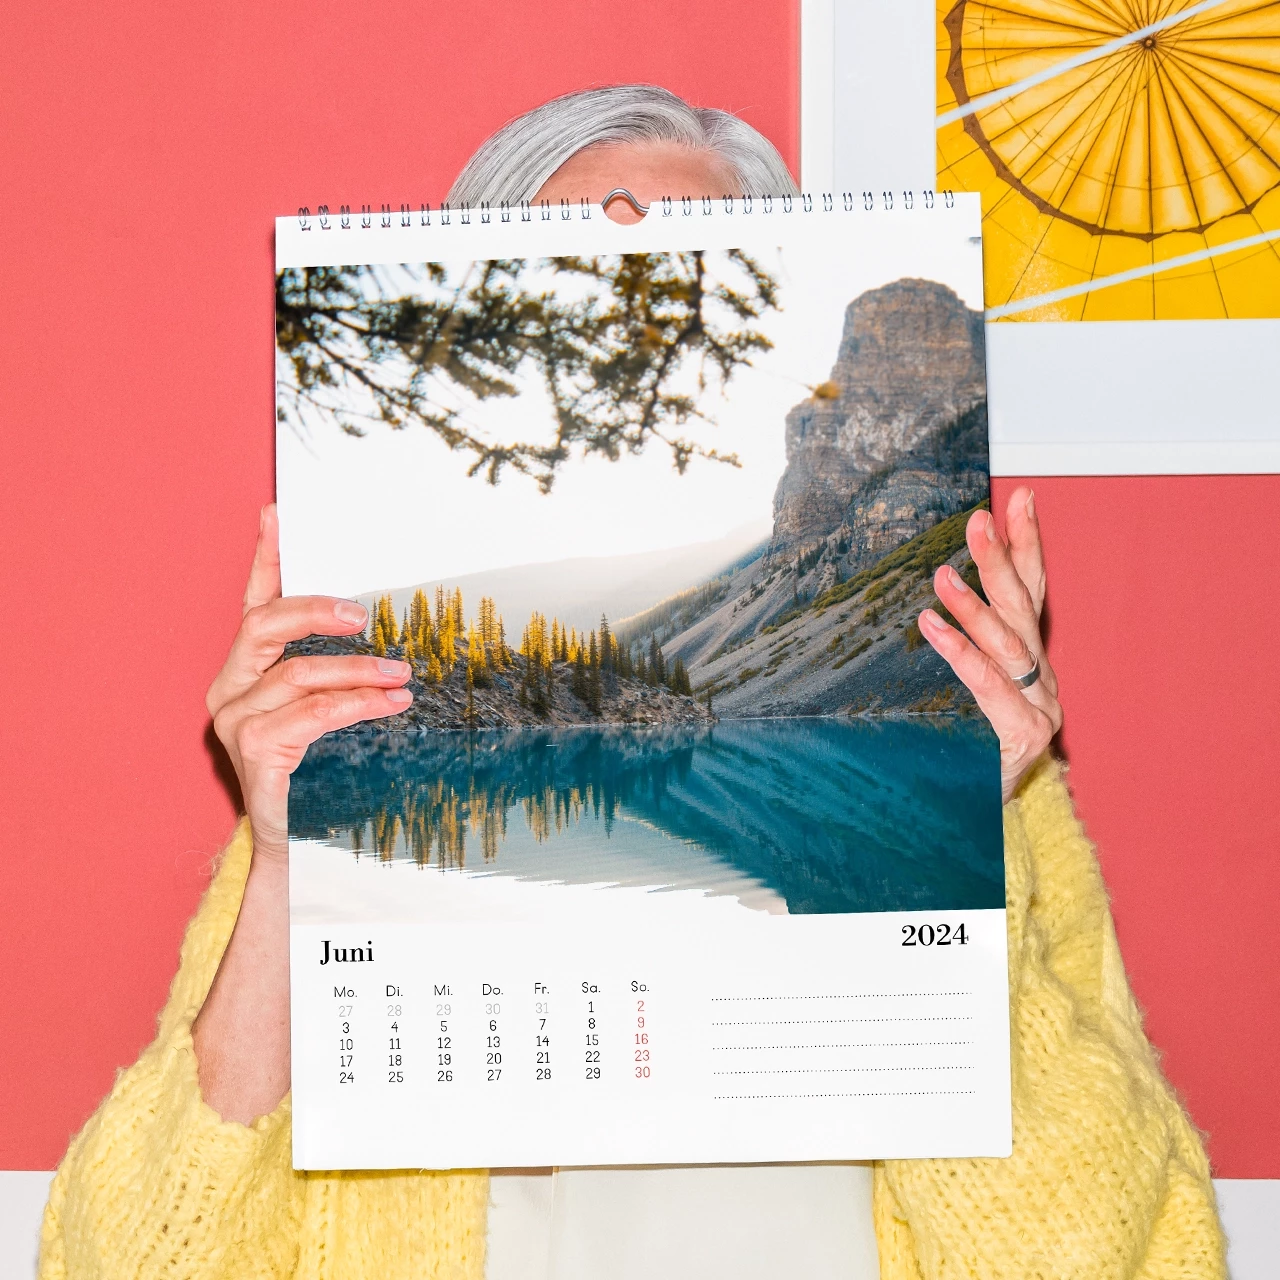 Eine ältere Dame hält einen Aktionskalender vor sich, um die herausragende Qualität und die Art und Weise der Bedruckung des günstigen Fotokalenders zu zeigen.